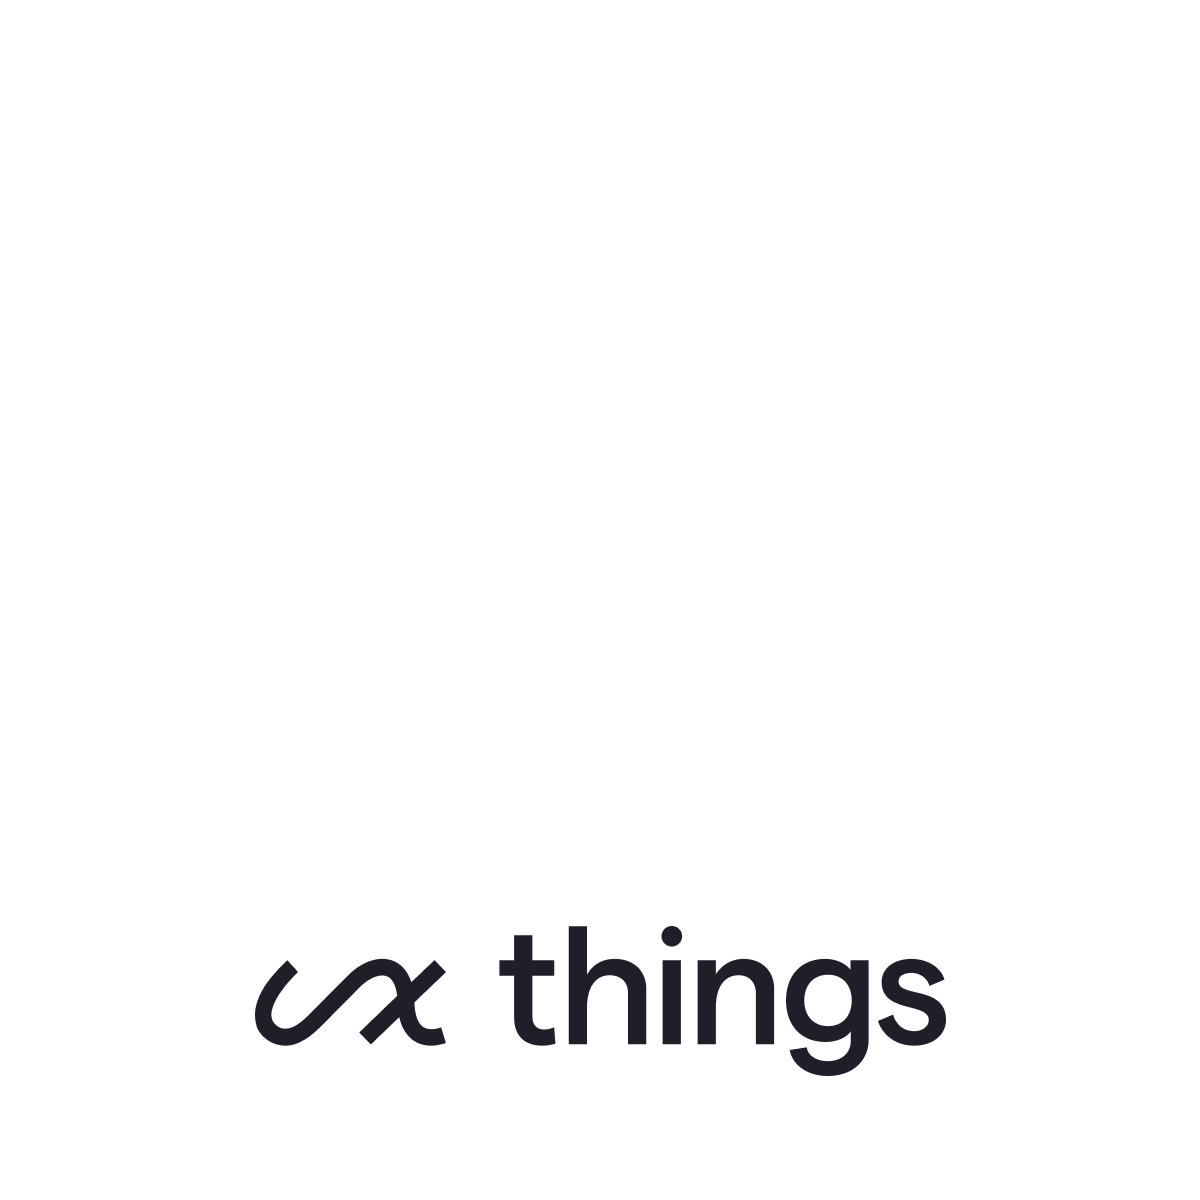 UX Things